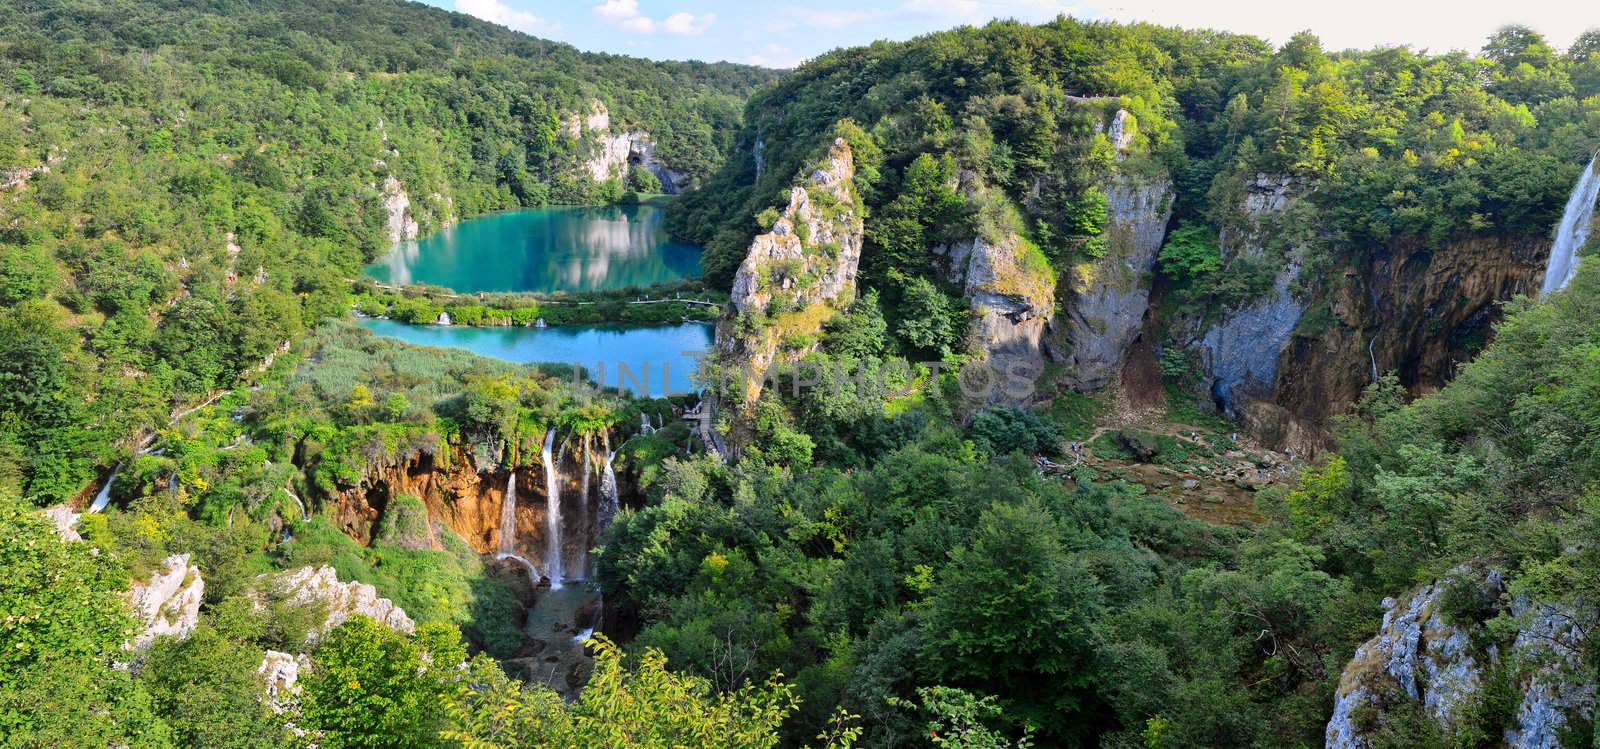 Plitvice Lakes - National Park in Croatia by maxoliki